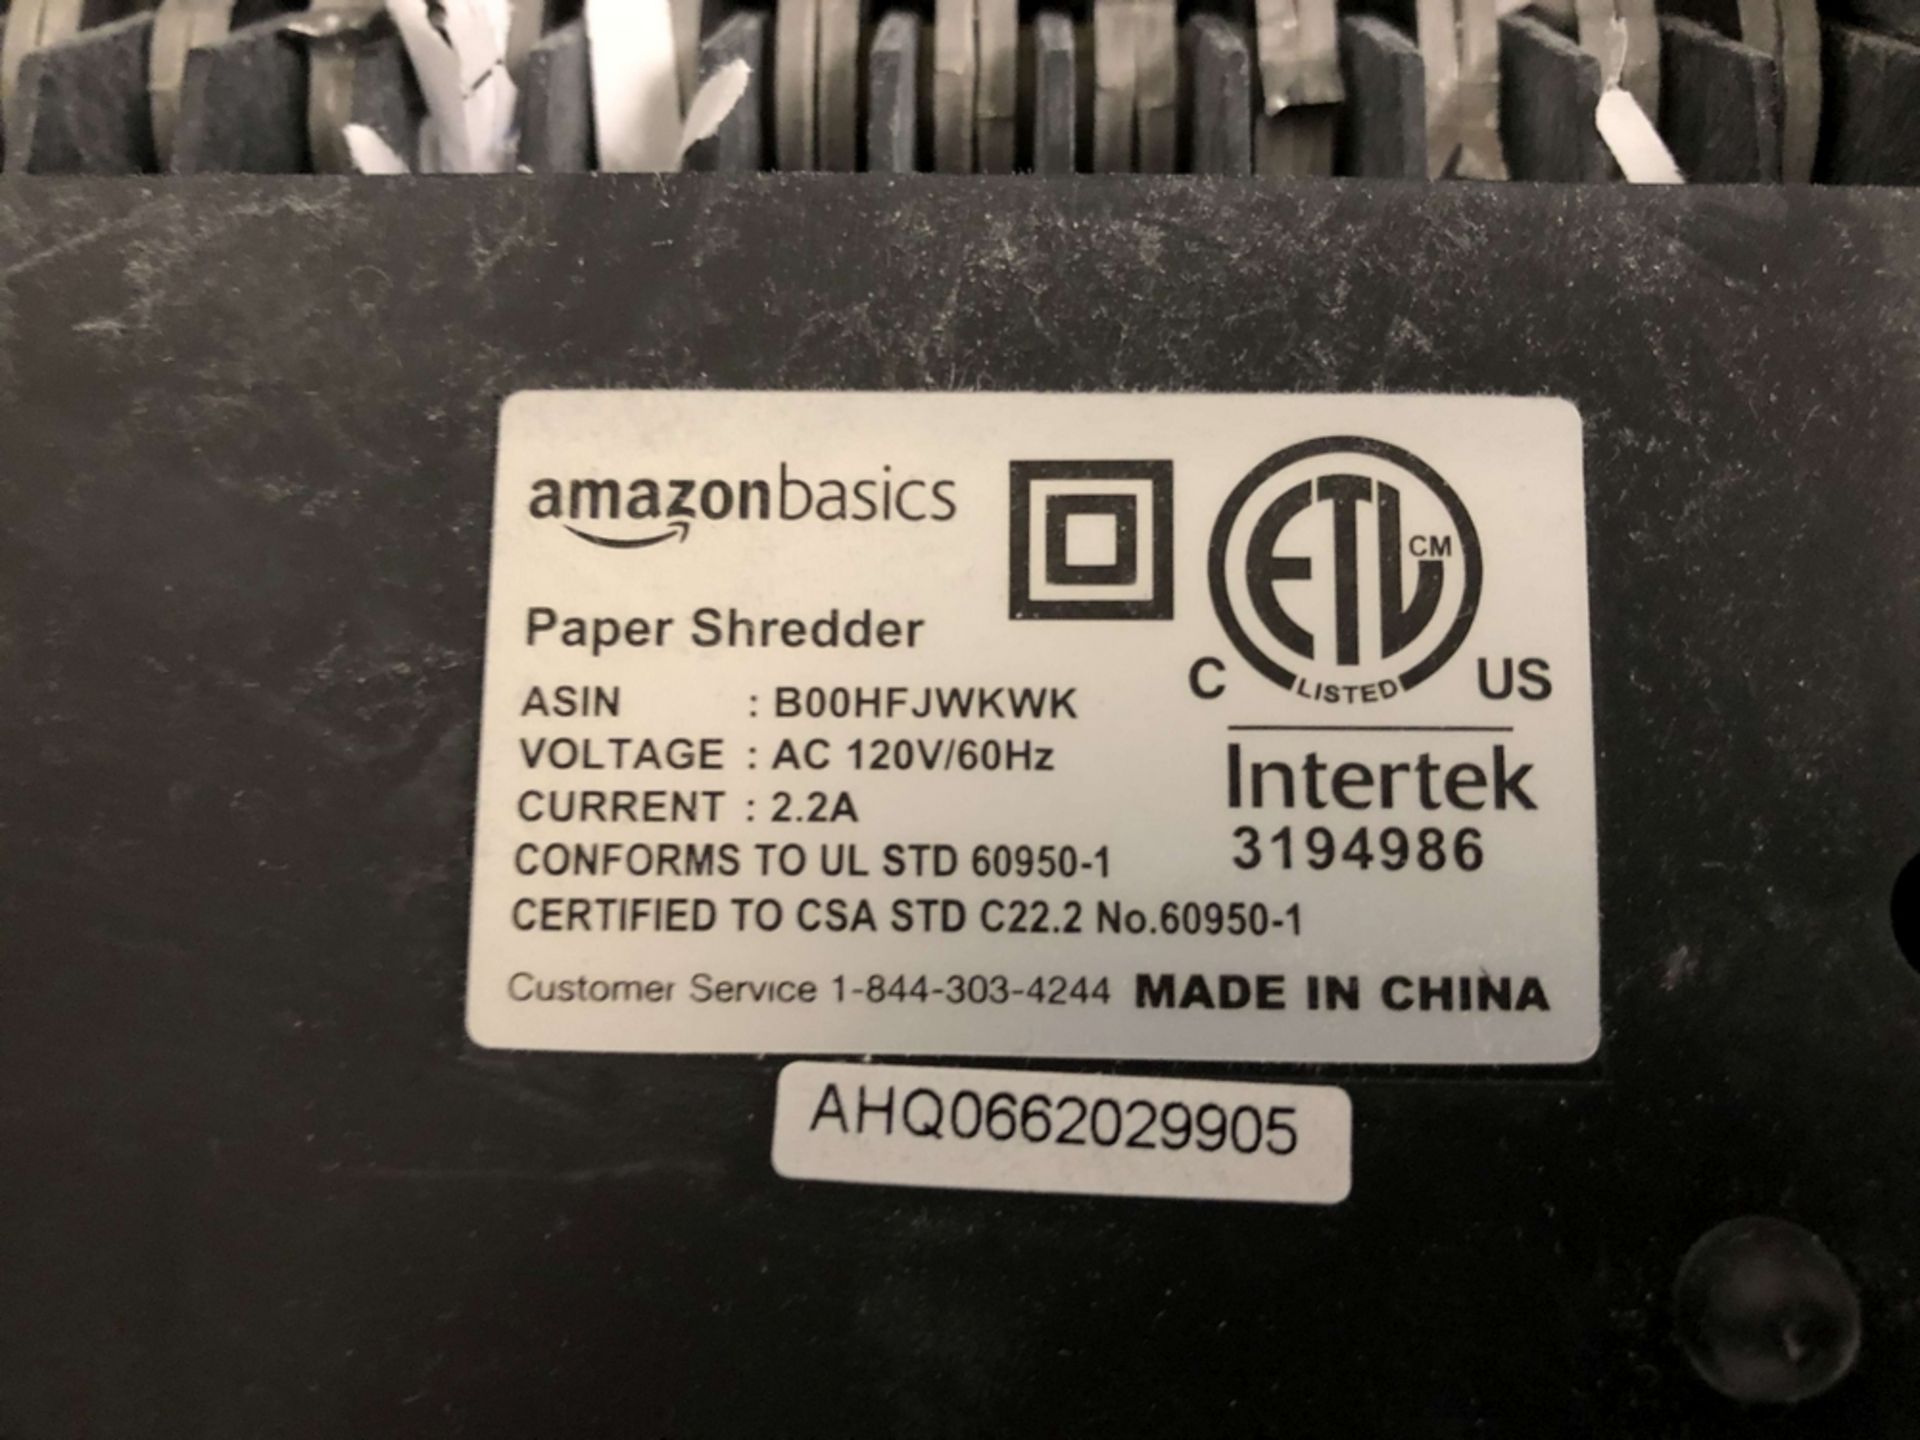 Amazon Basics Paper Shredder - Image 2 of 2